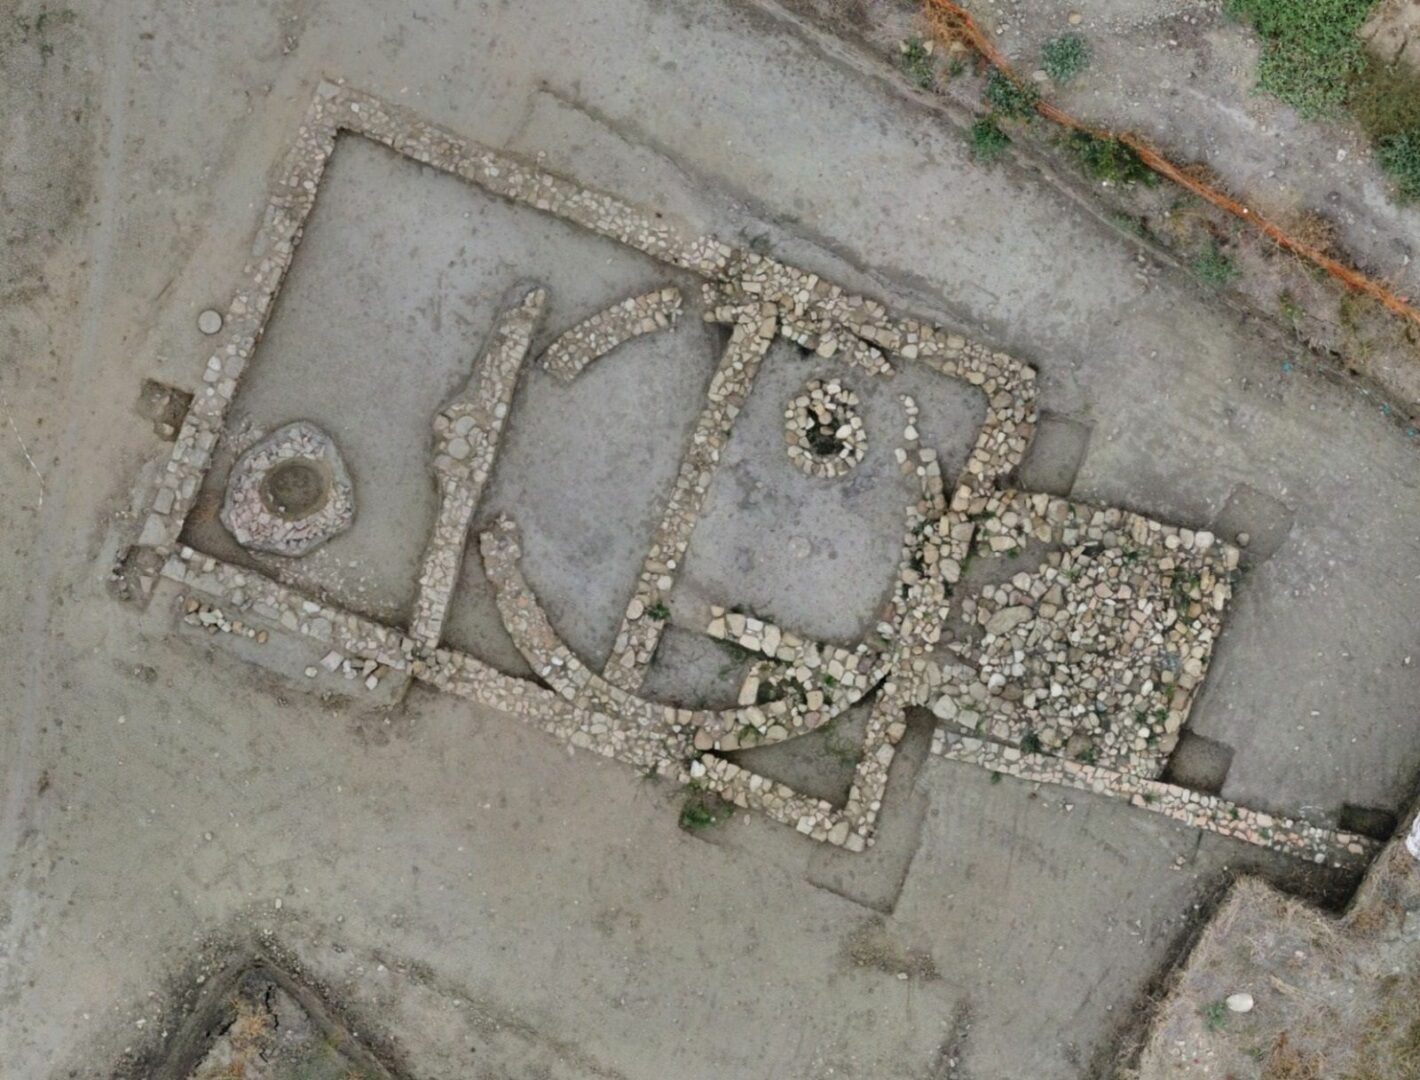 Nuovi reperti dell’Età ellenistica trovati nel Nisseno